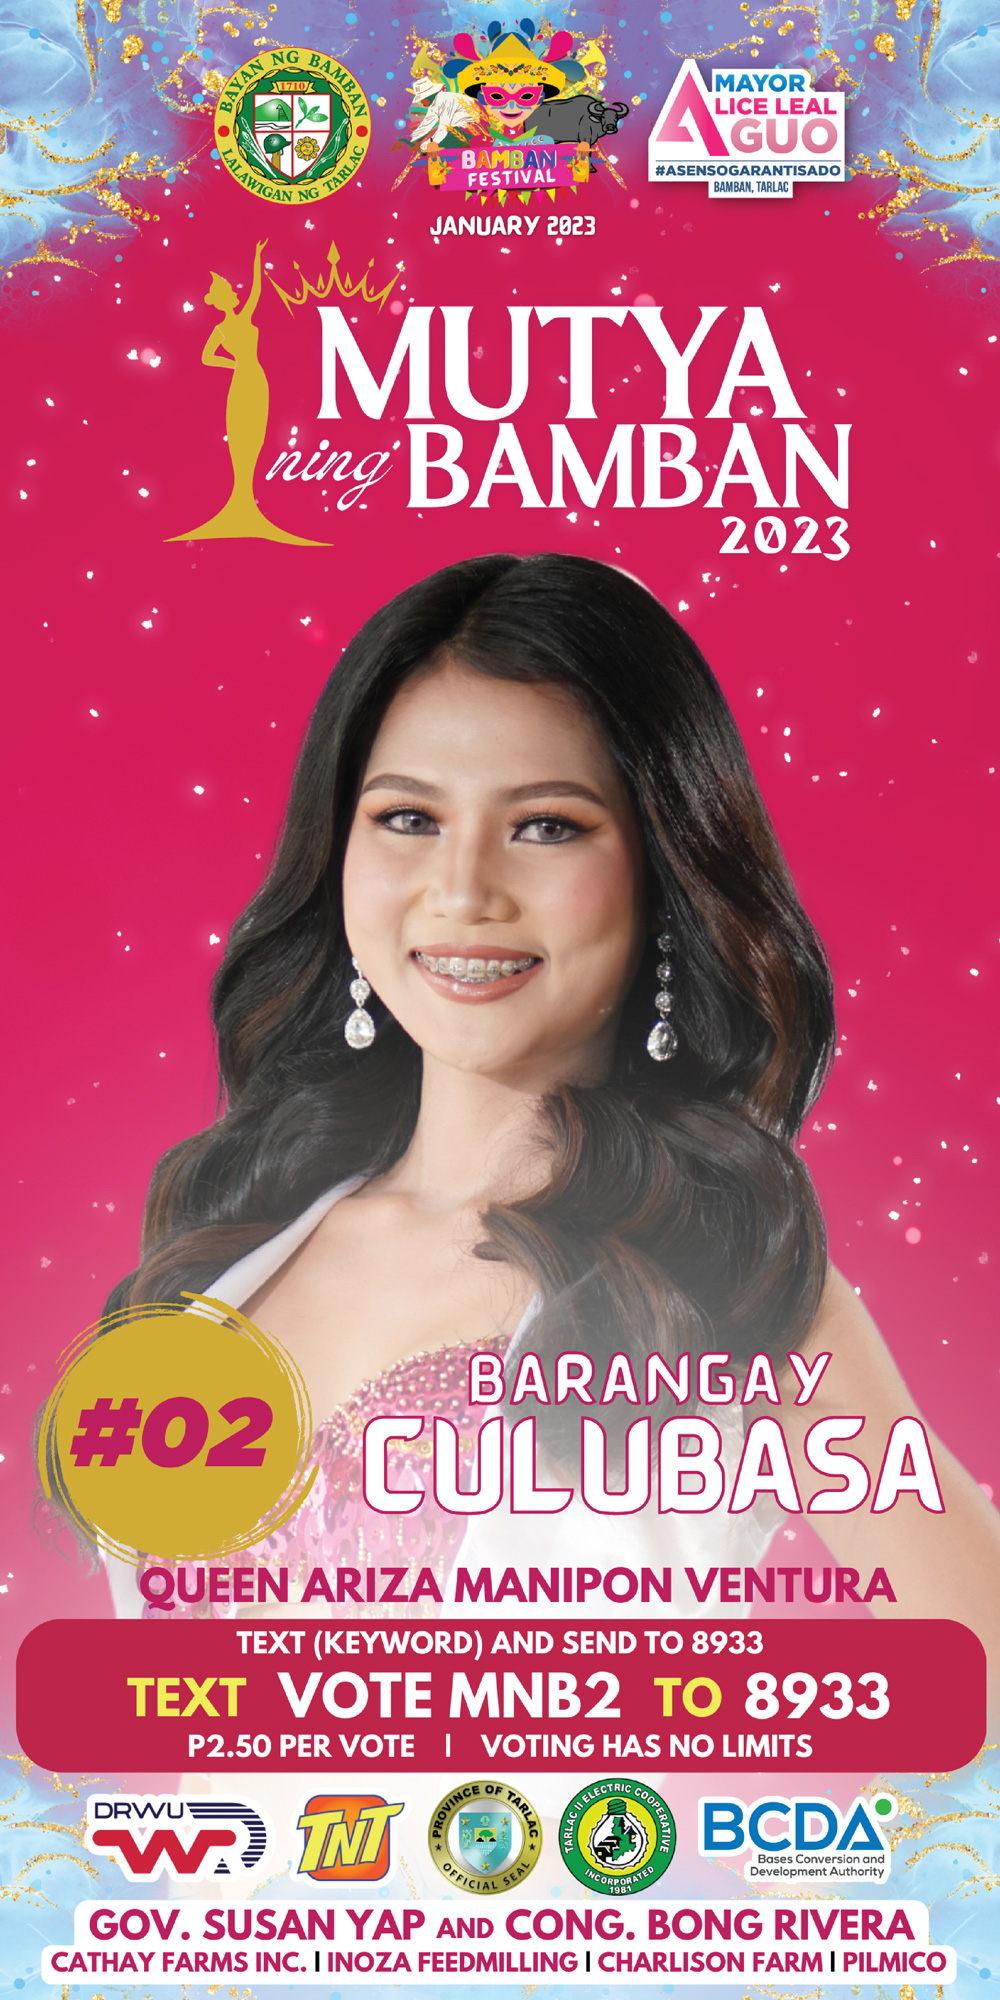 Brgy.Culubasa - Queen Ariza Manipon Ventura